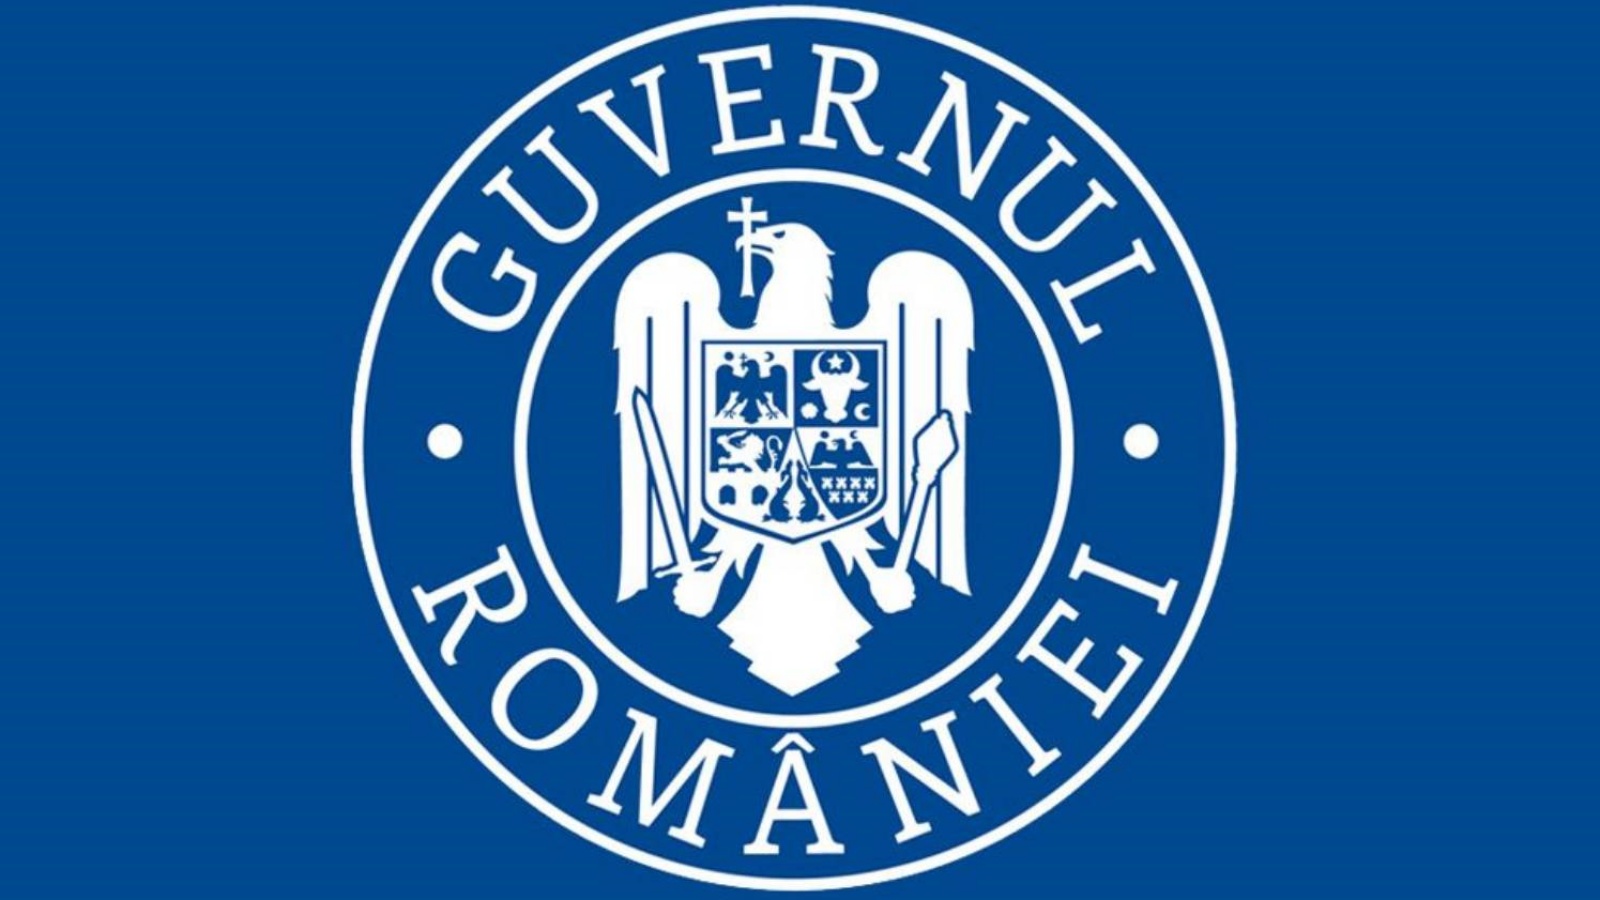 Escuelas aprobadas por pruebas de saliva del gobierno rumano